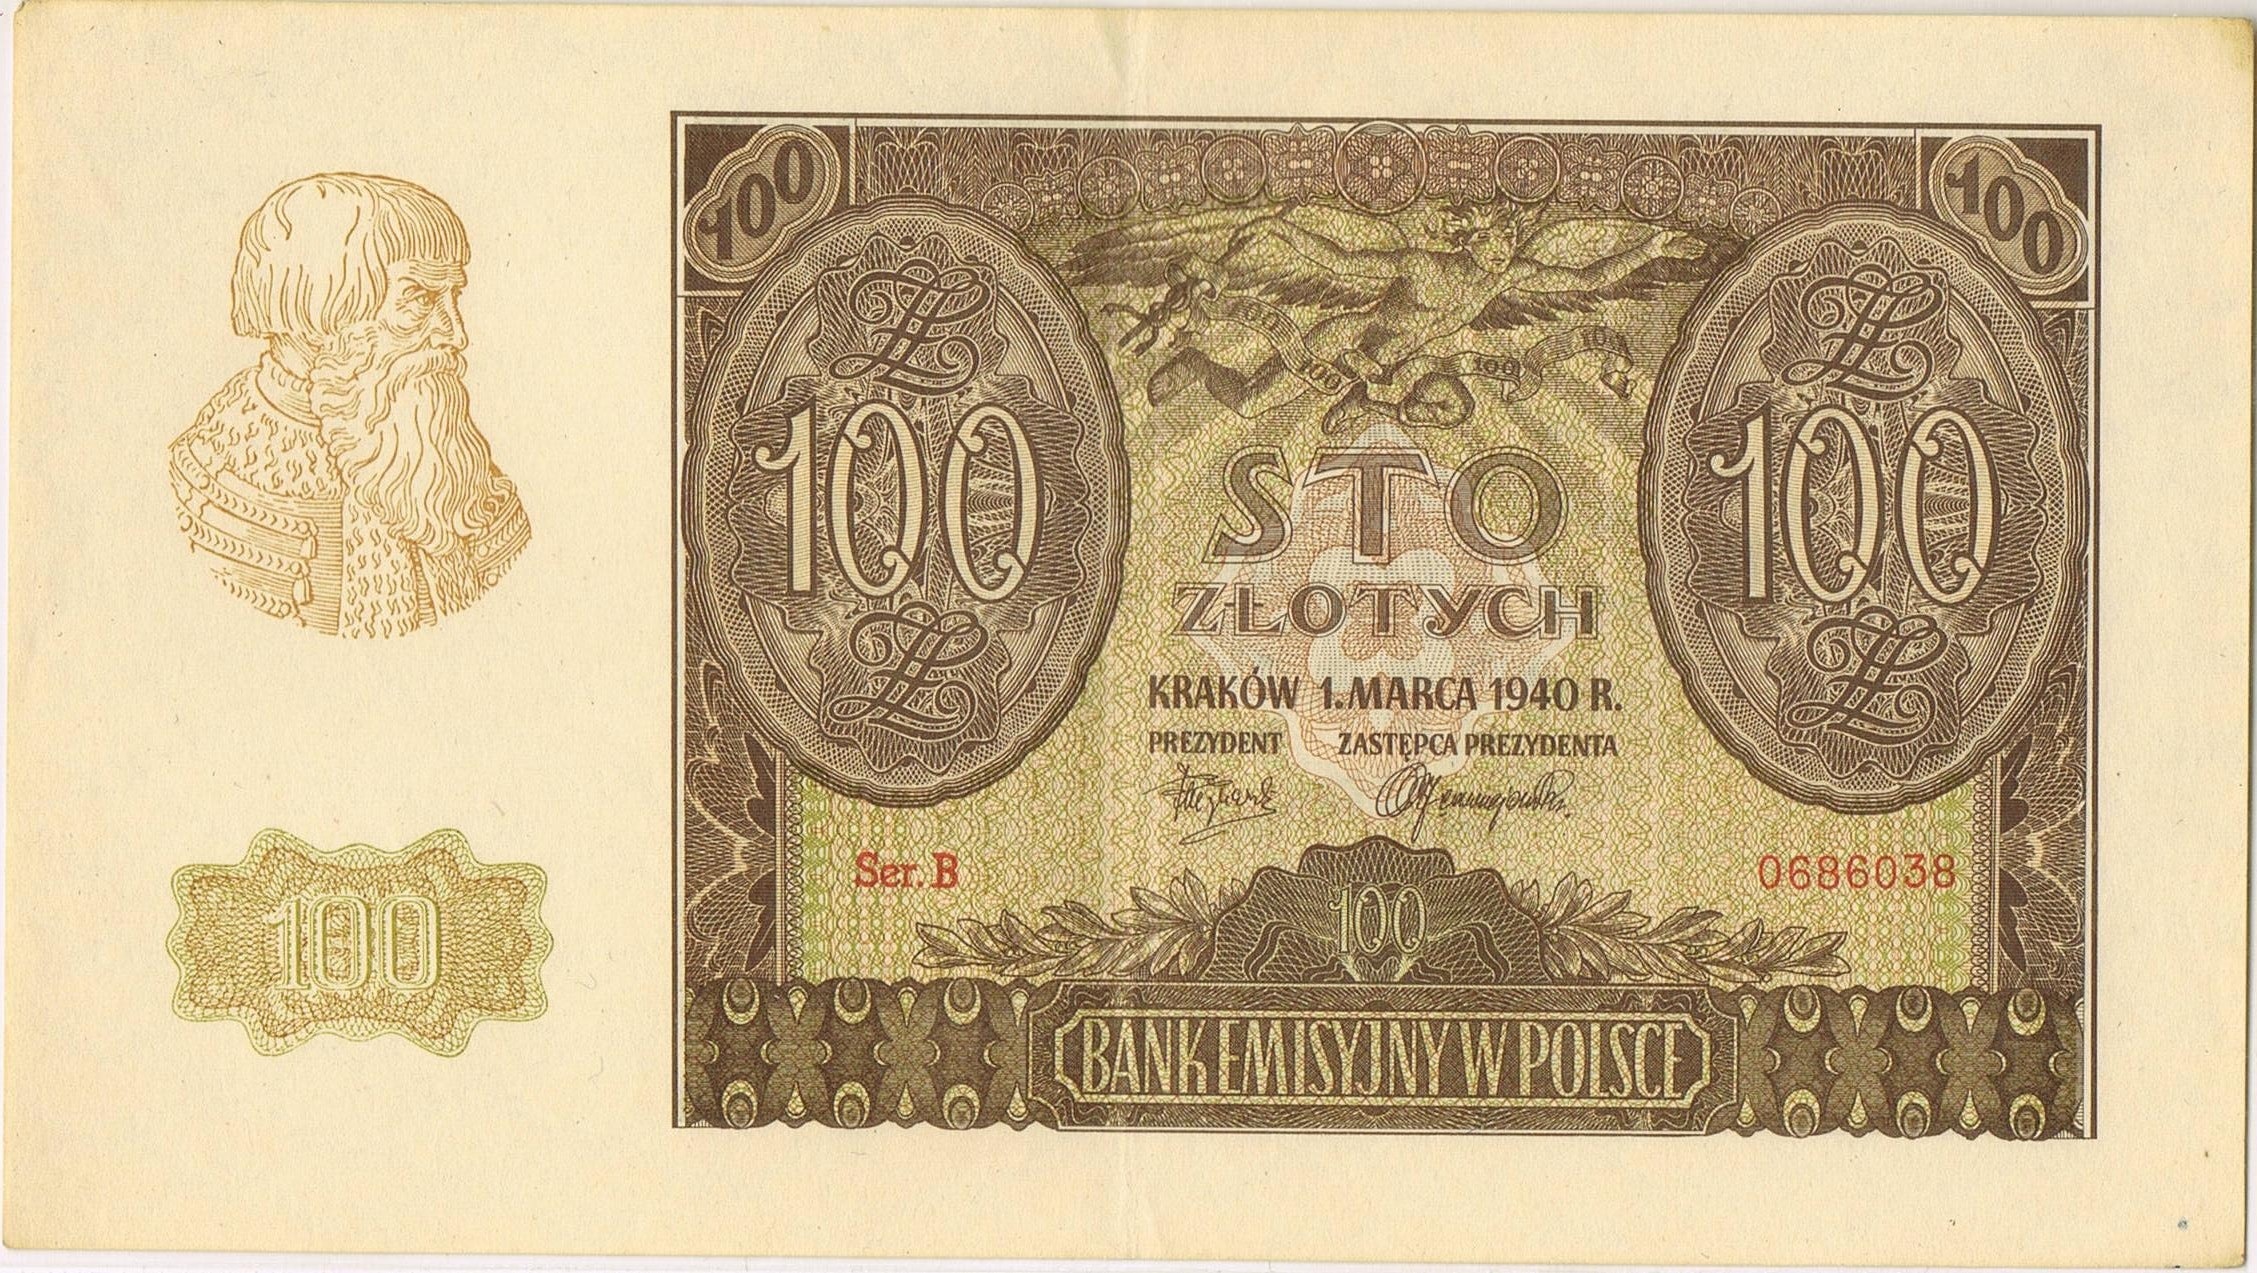 100 polish zloty